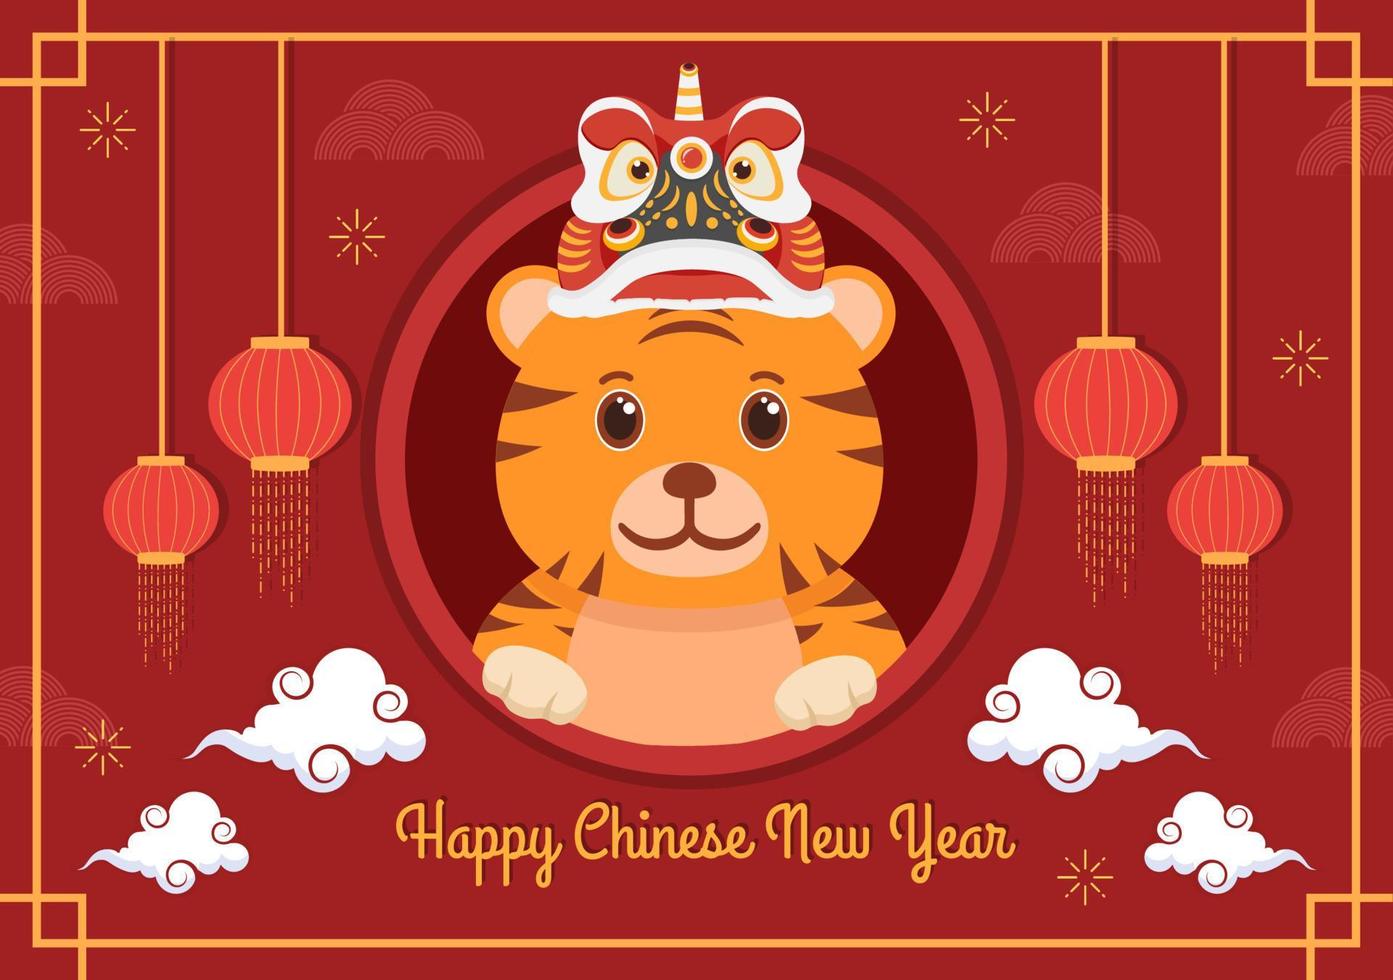 Gelukkig Chinees Nieuwjaar 2022 met dierenriem schattige tijger en bloem op rode achtergrond voor wenskaart, kalender of poster in platte ontwerp illustratie vector